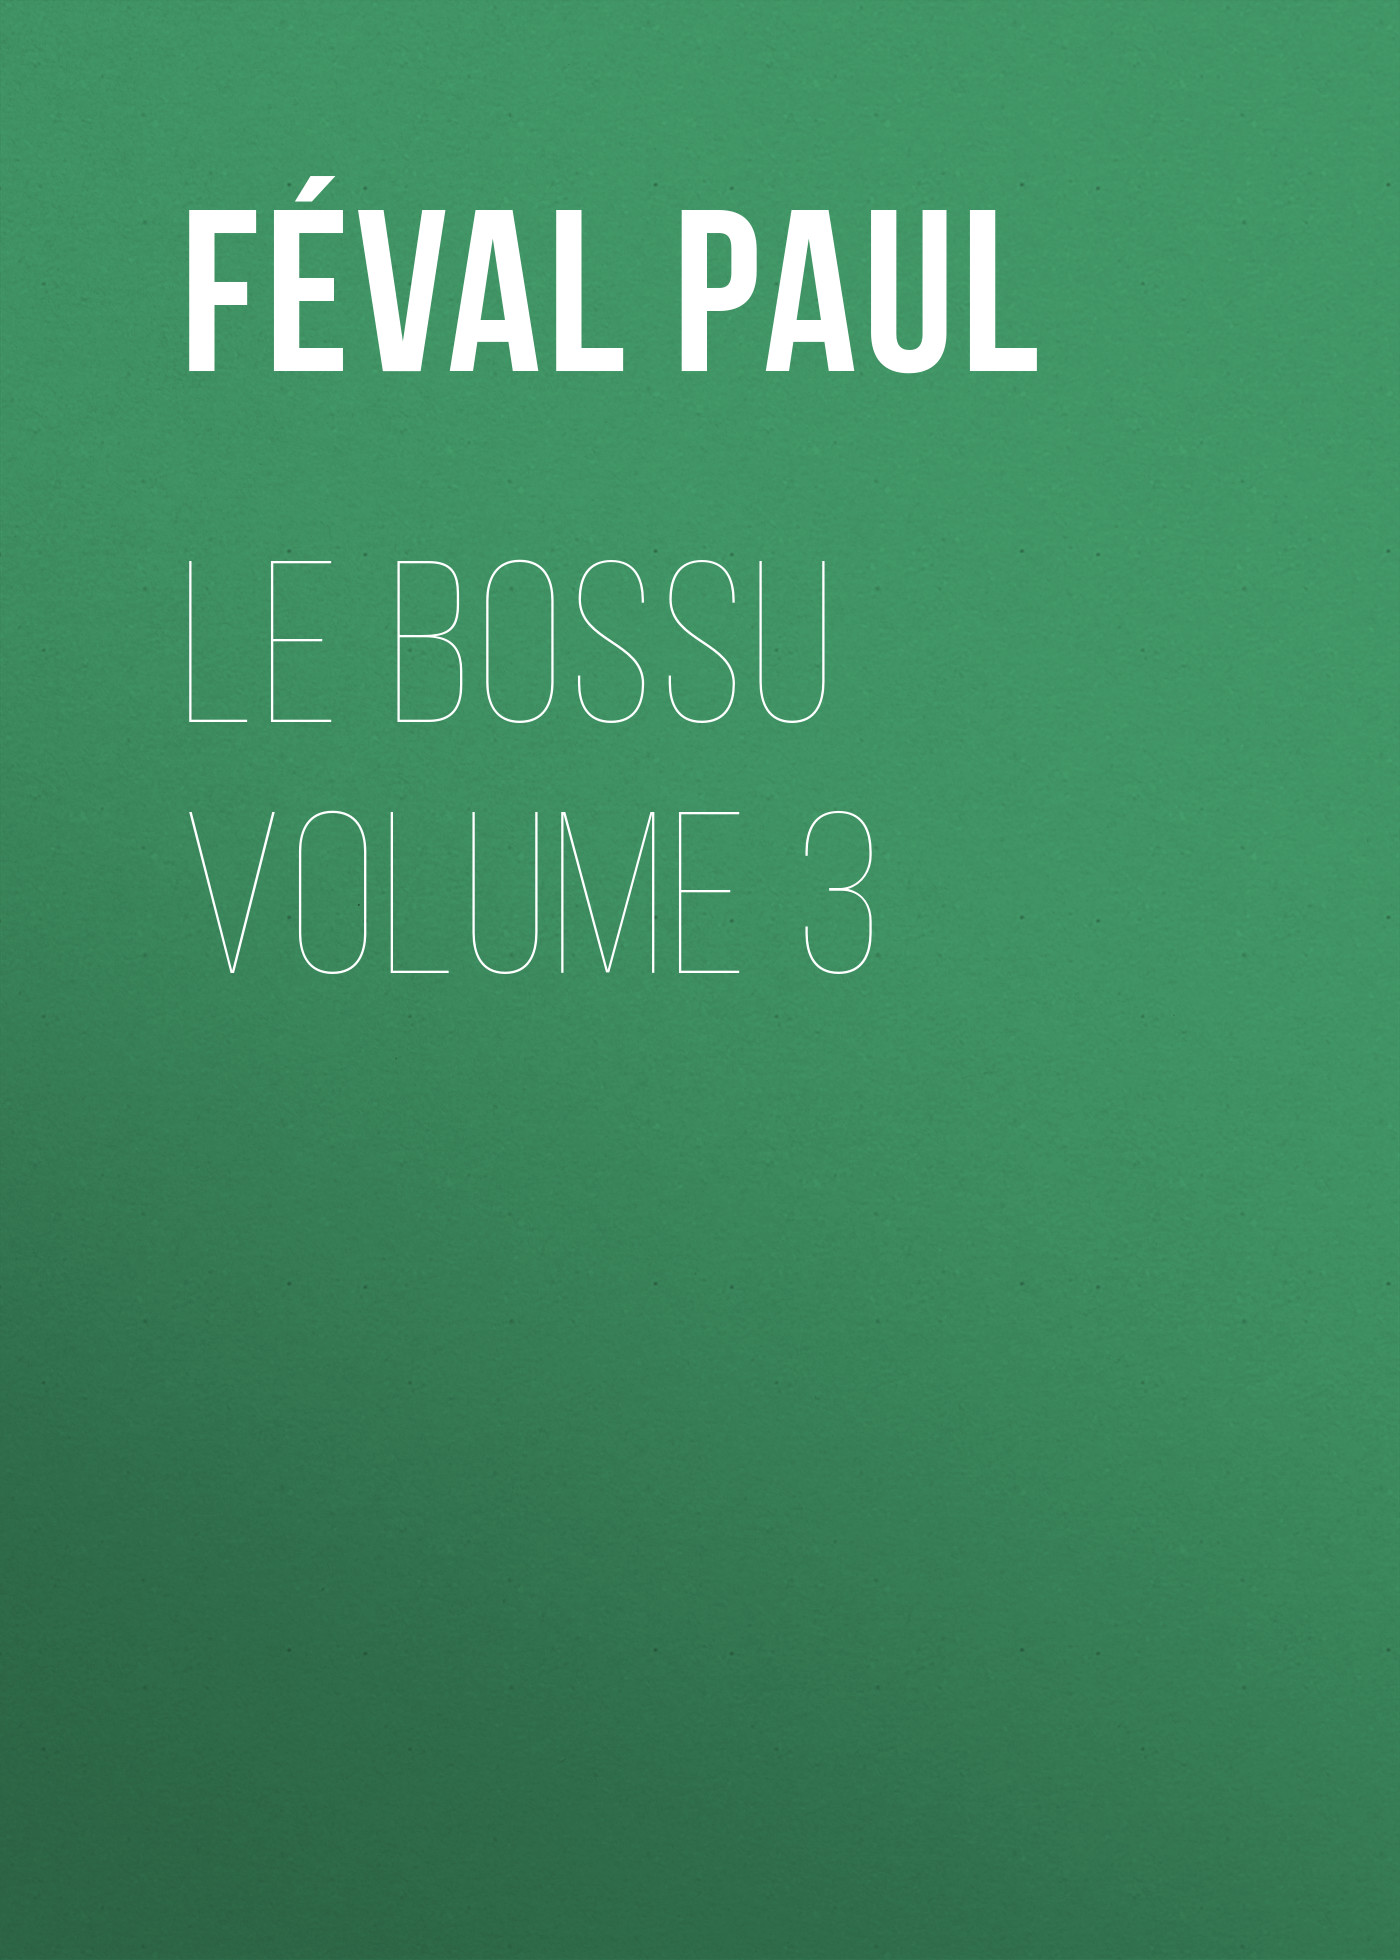 Книга Le Bossu Volume 3 из серии , созданная Paul Féval, может относится к жанру Зарубежная старинная литература, Зарубежная классика. Стоимость электронной книги Le Bossu Volume 3 с идентификатором 24728961 составляет 0 руб.